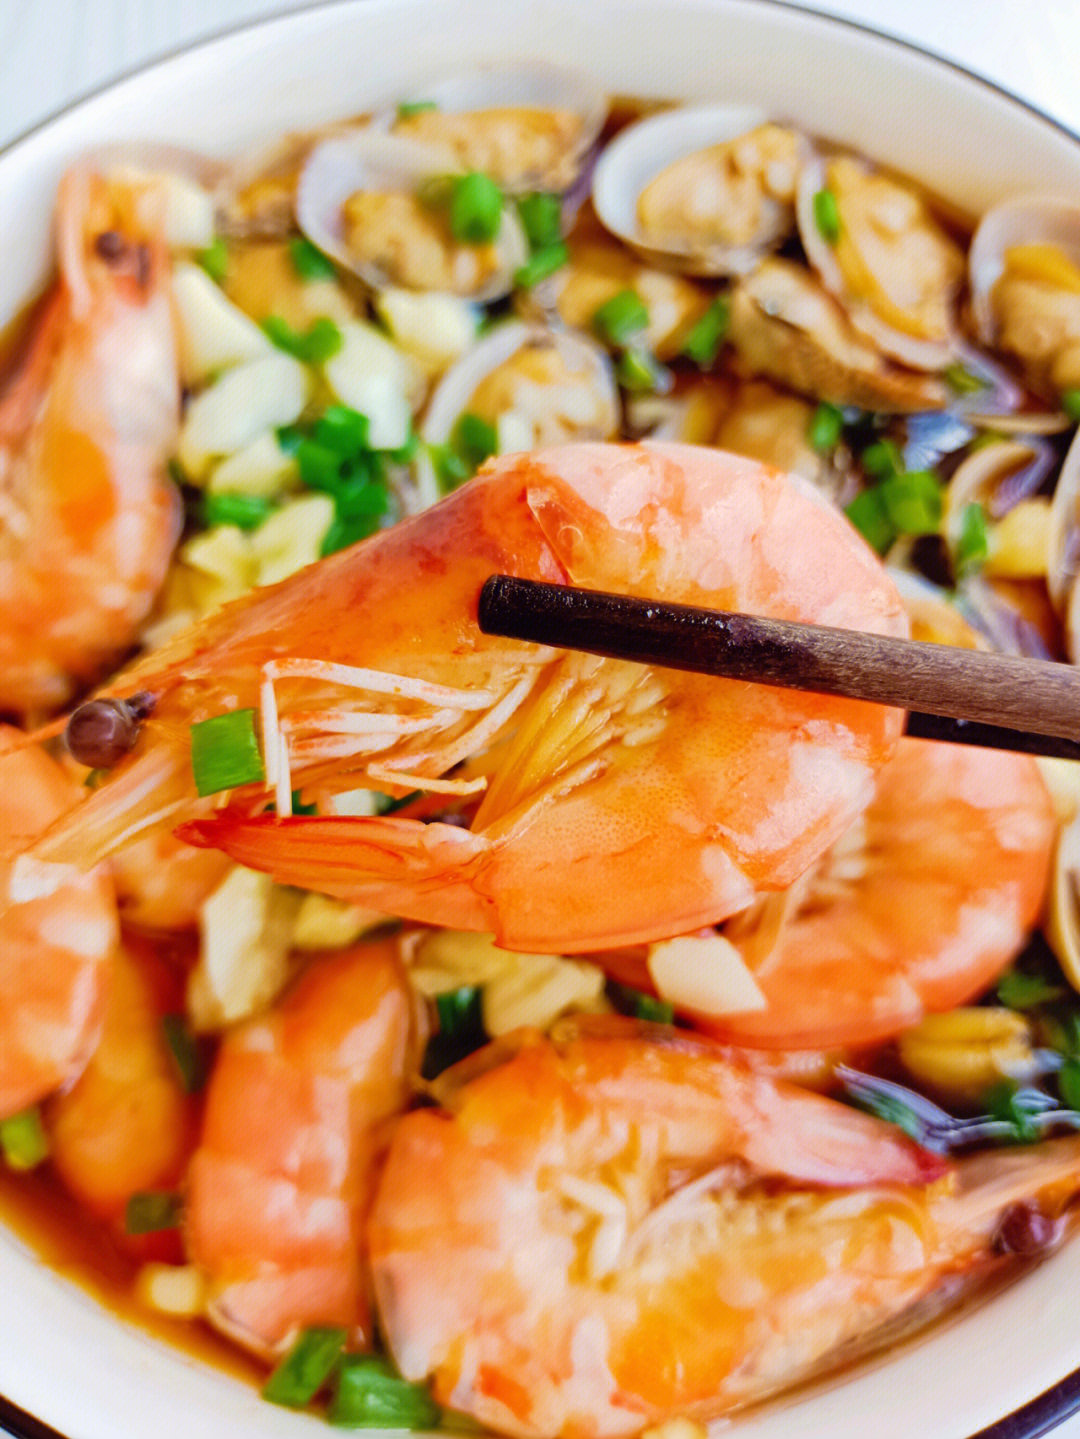 食材:鲜虾,花蛤,海鲜捞汁,大蒜,香葱做法:1